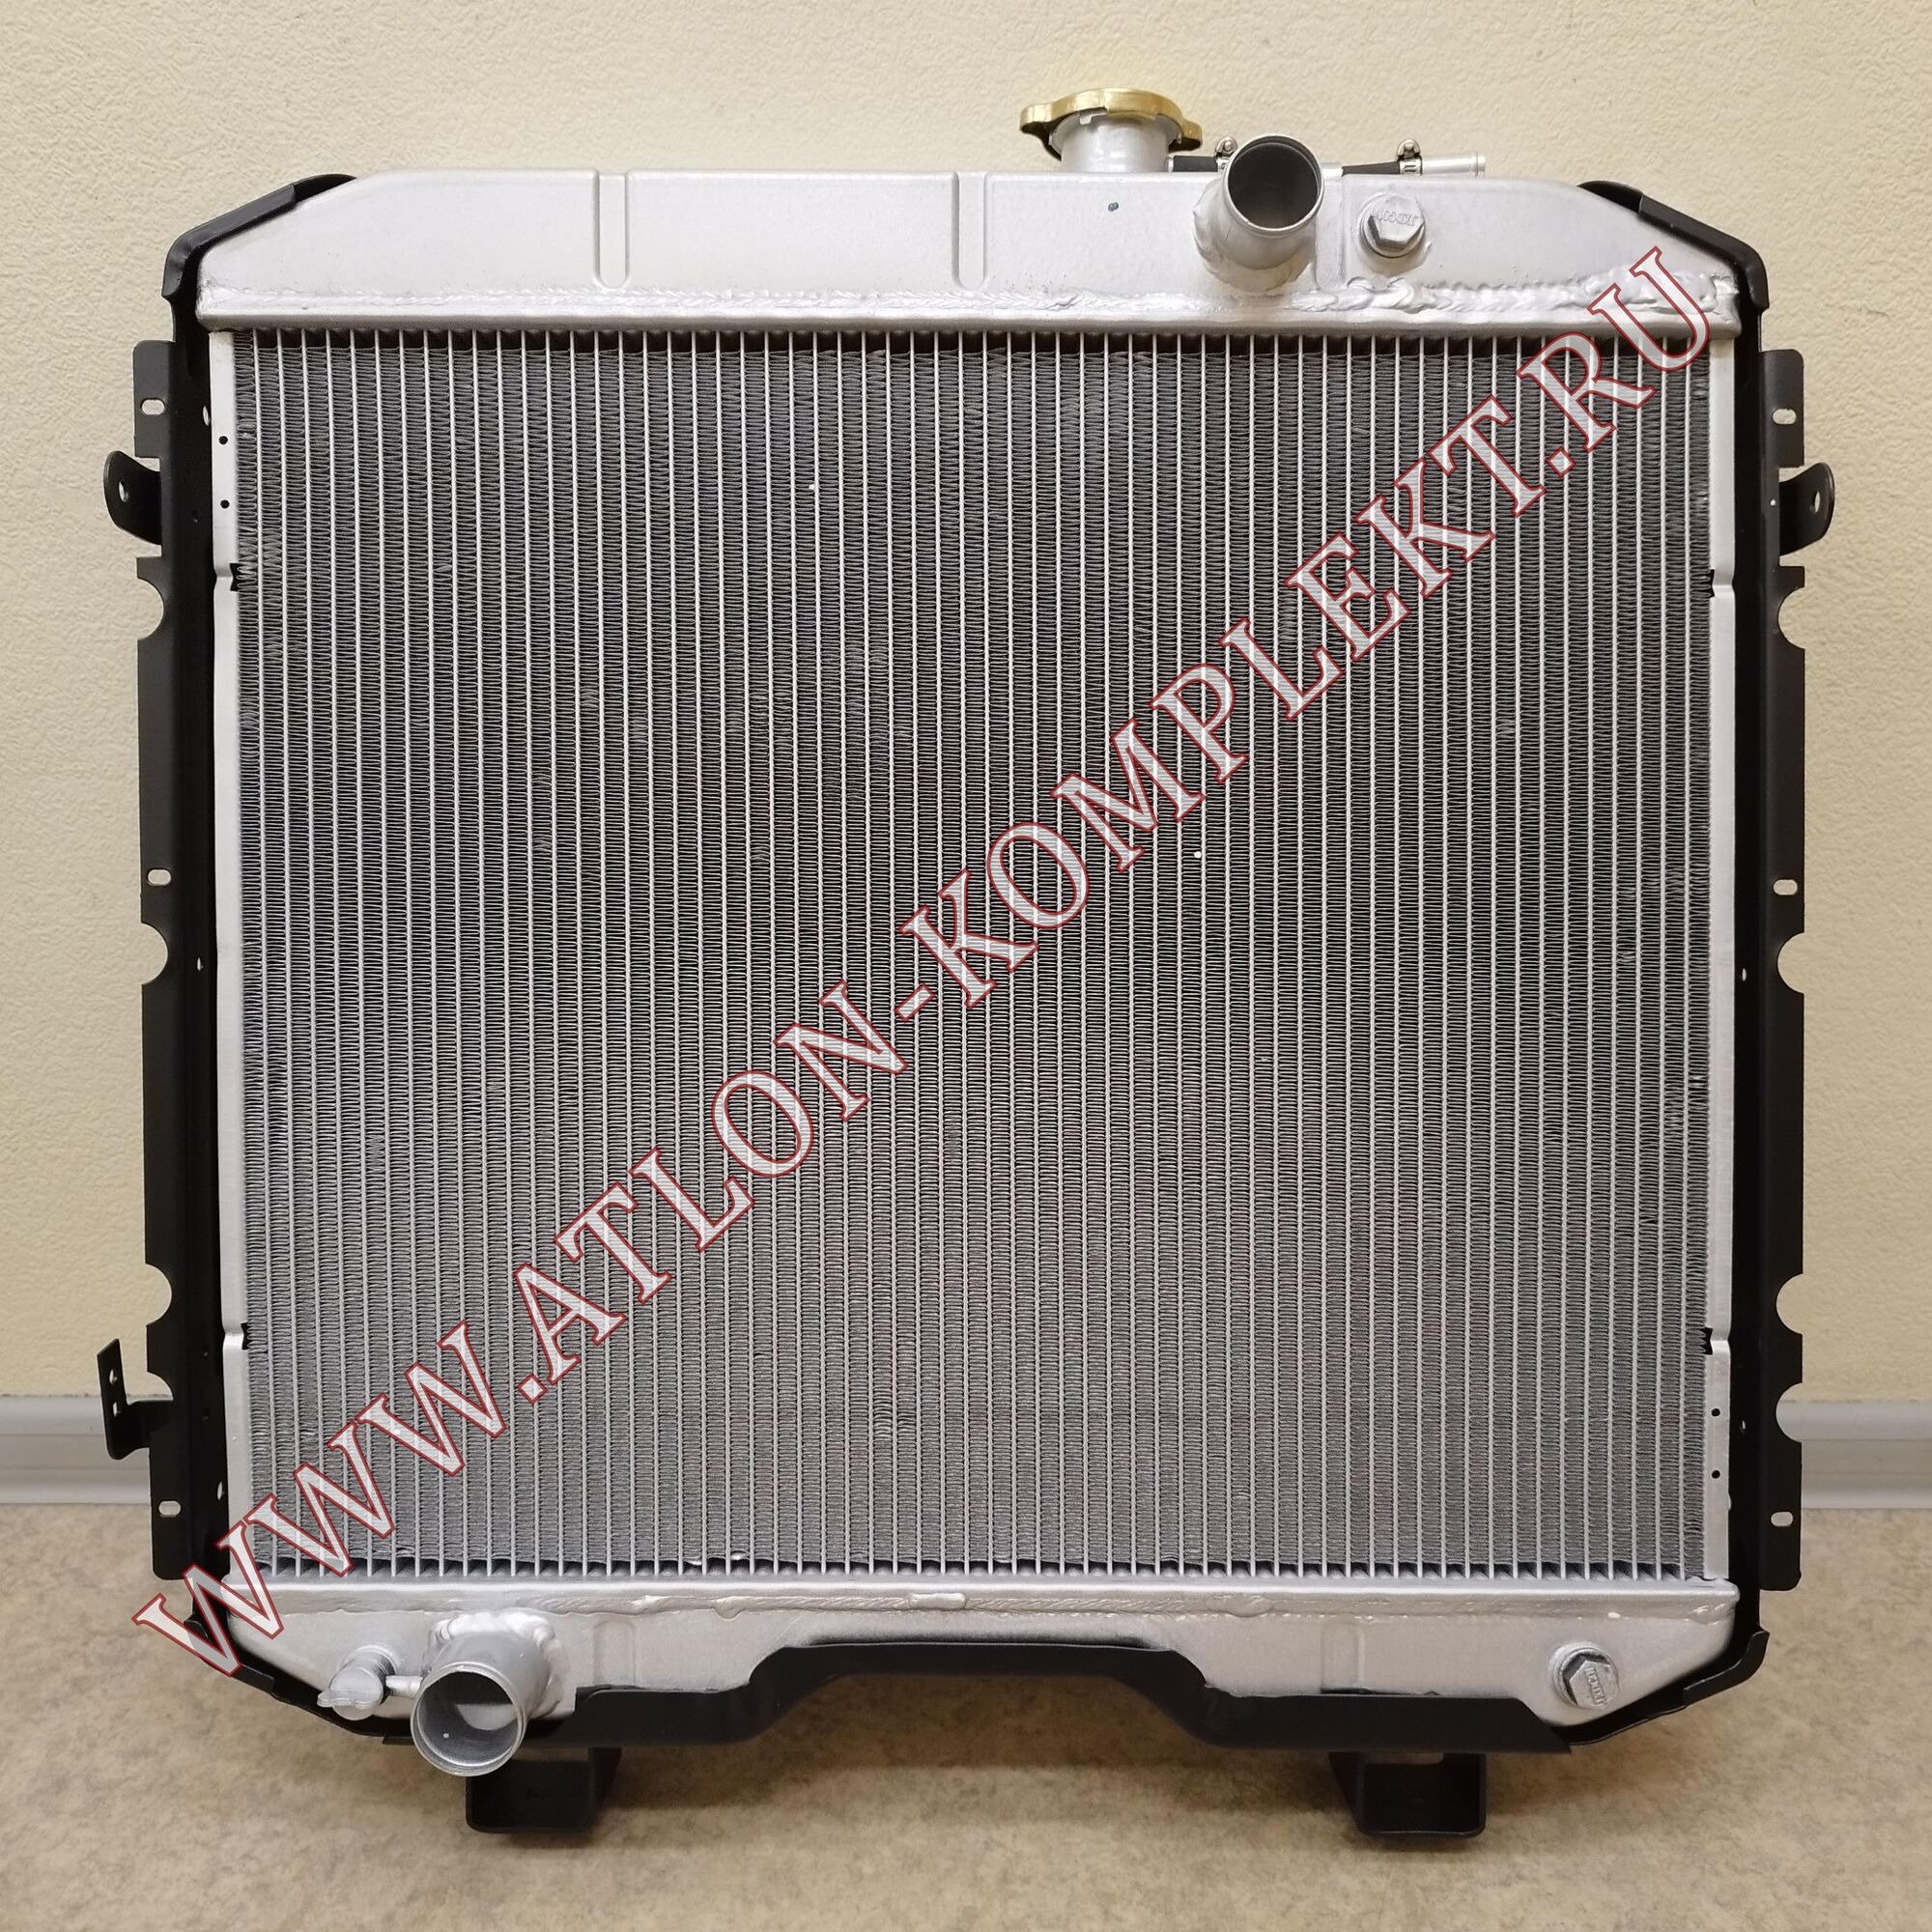 Радиатор ГАЗ 66 алюминиевый LRc 0366b (66 1301010)